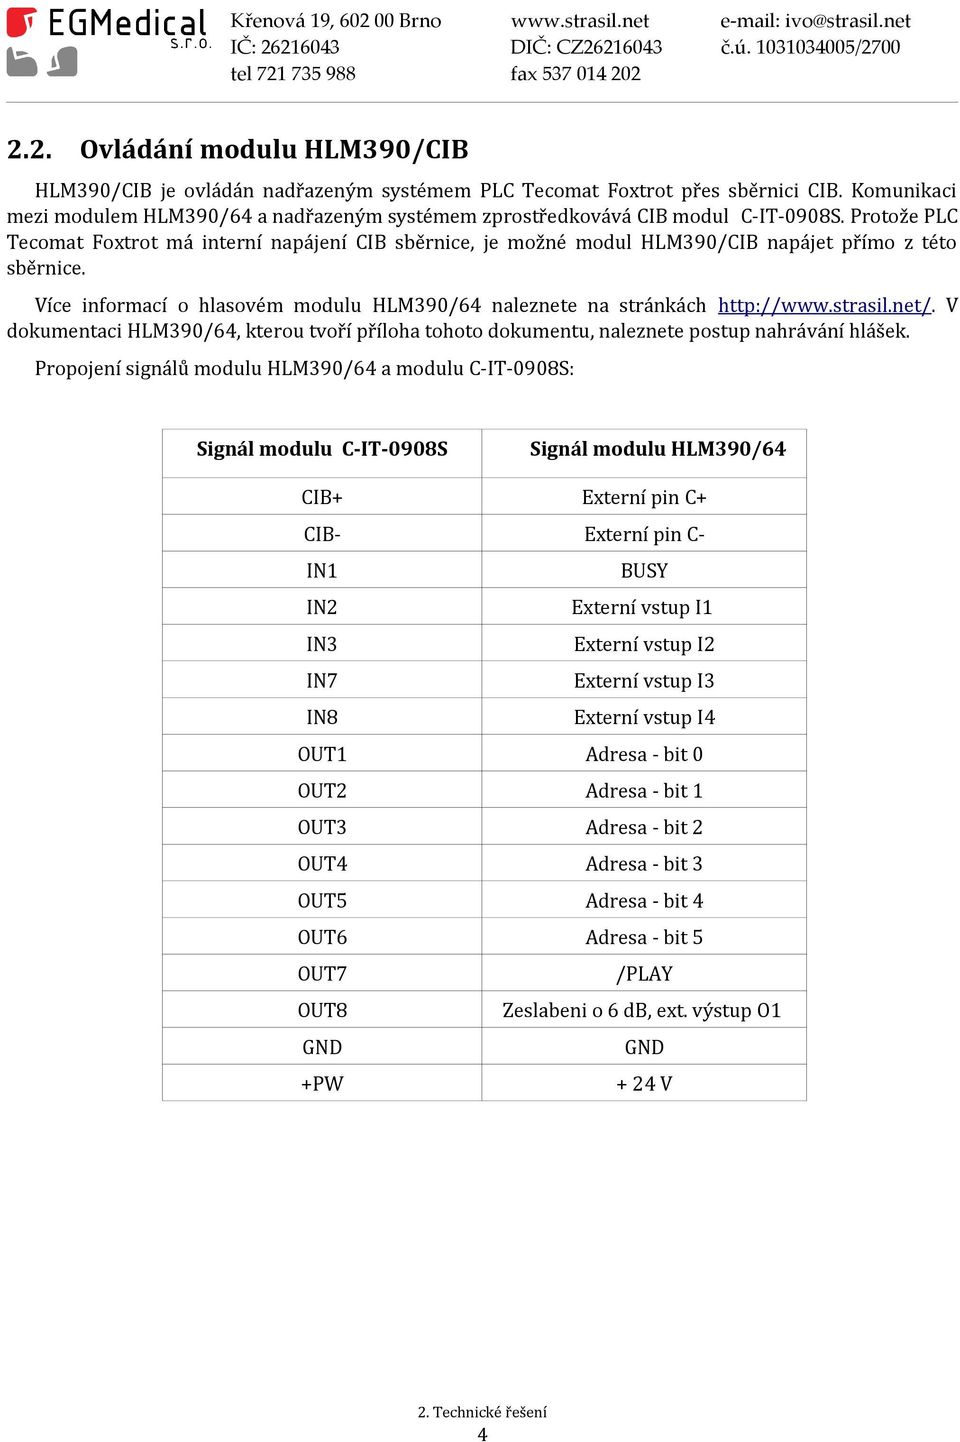 Protože PLC Tecomat Foxtrot má interní napájení CIB sběrnice, je možné modul HLM390/CIB napájet přímo z této sběrnice. Více informací o hlasovém modulu HLM390/64 naleznete na stránkách http://www.